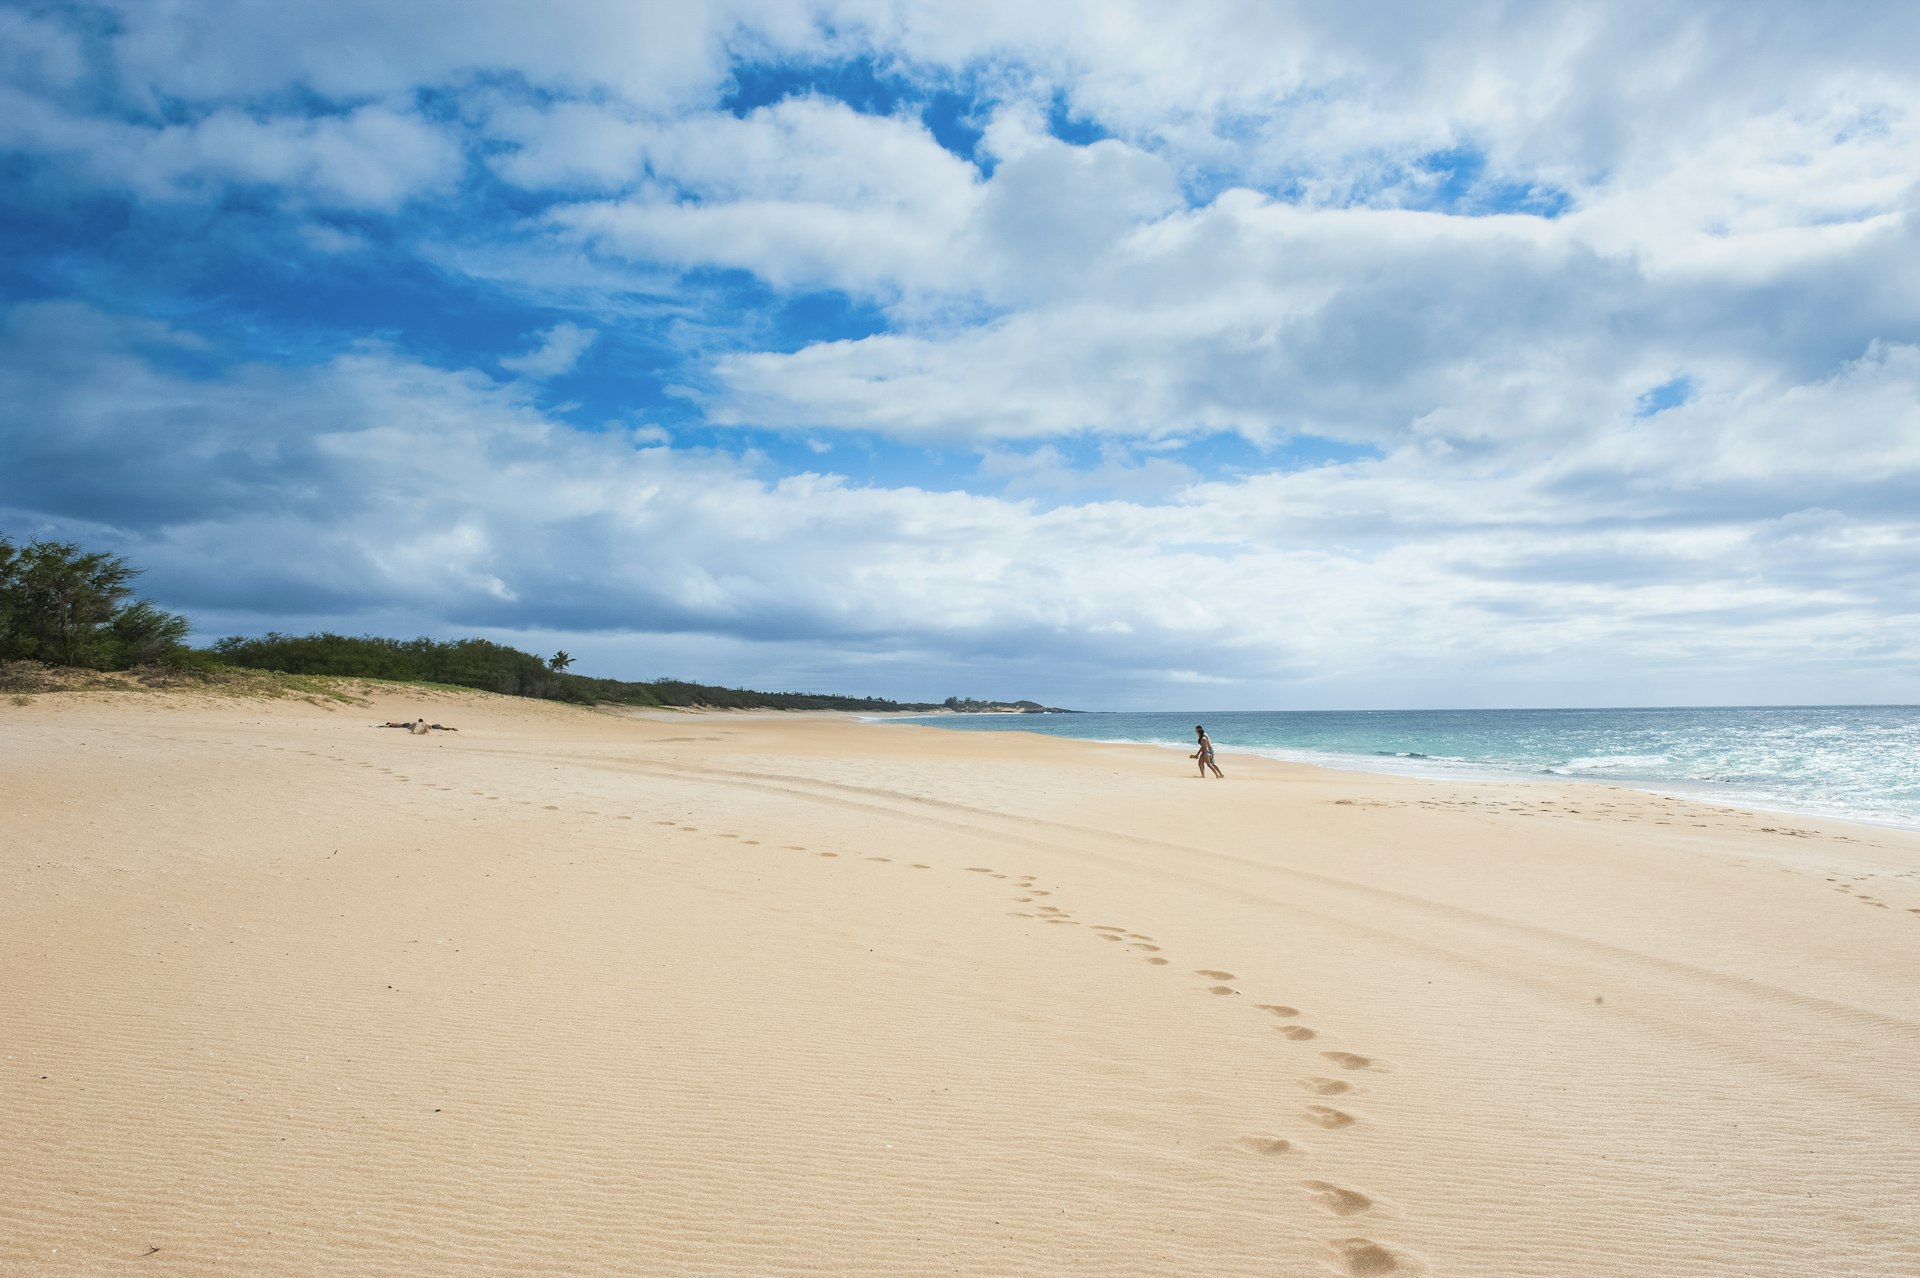 A Molokai beach